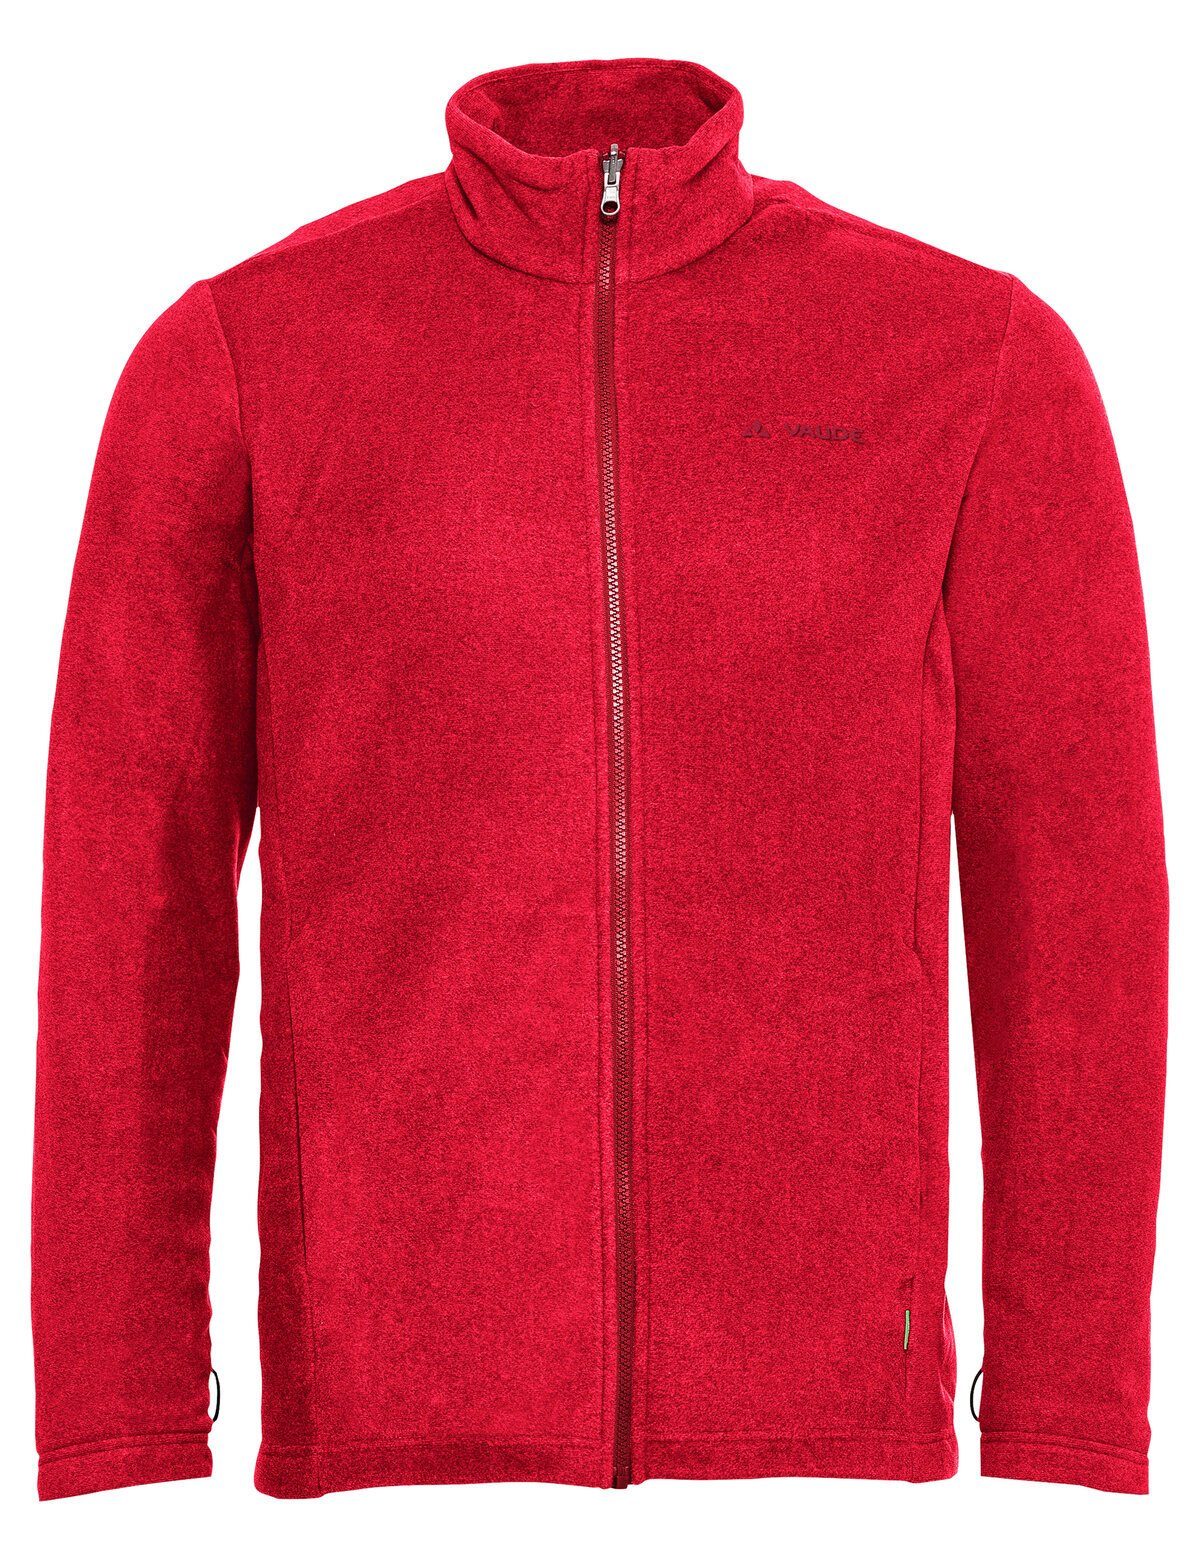 VAUDE Doppeljacke Rosemoor Men's red Jacket 3in1 (2-St)